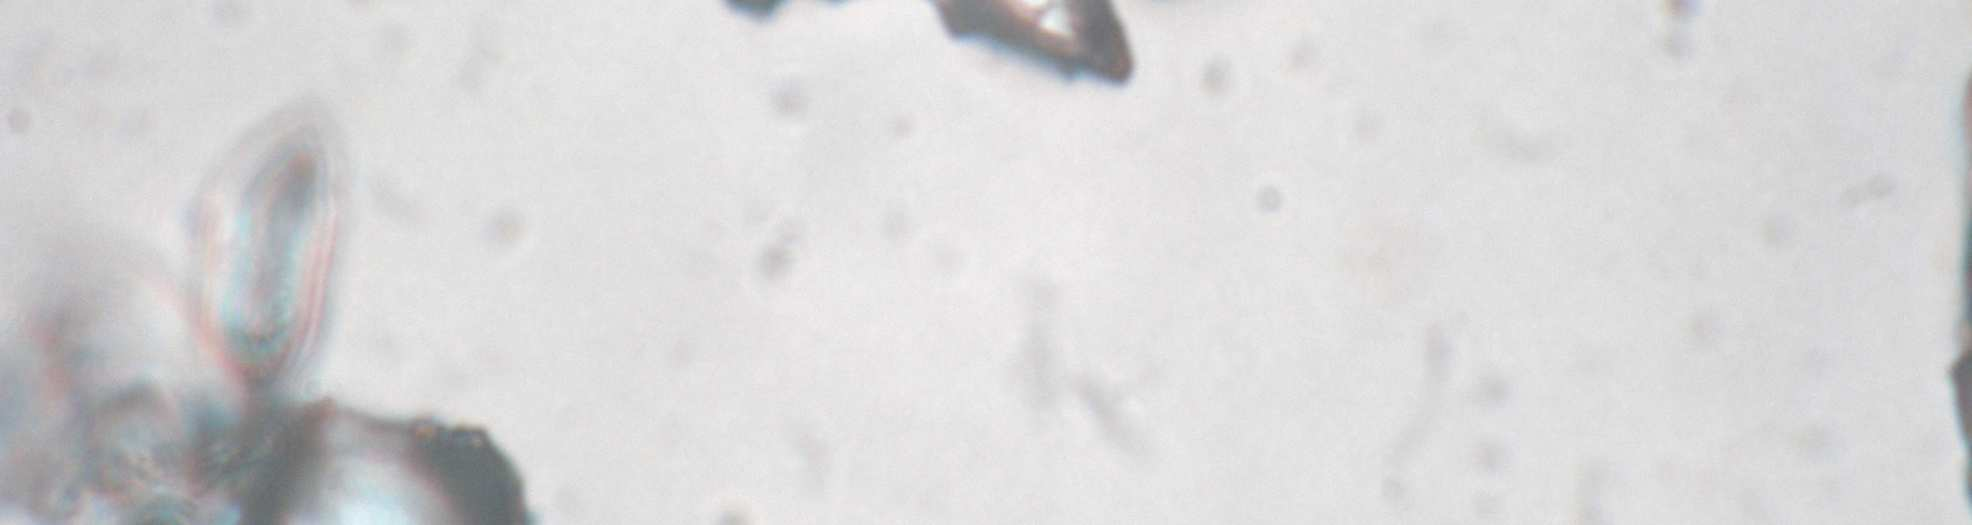 microscopia dos grânulos das